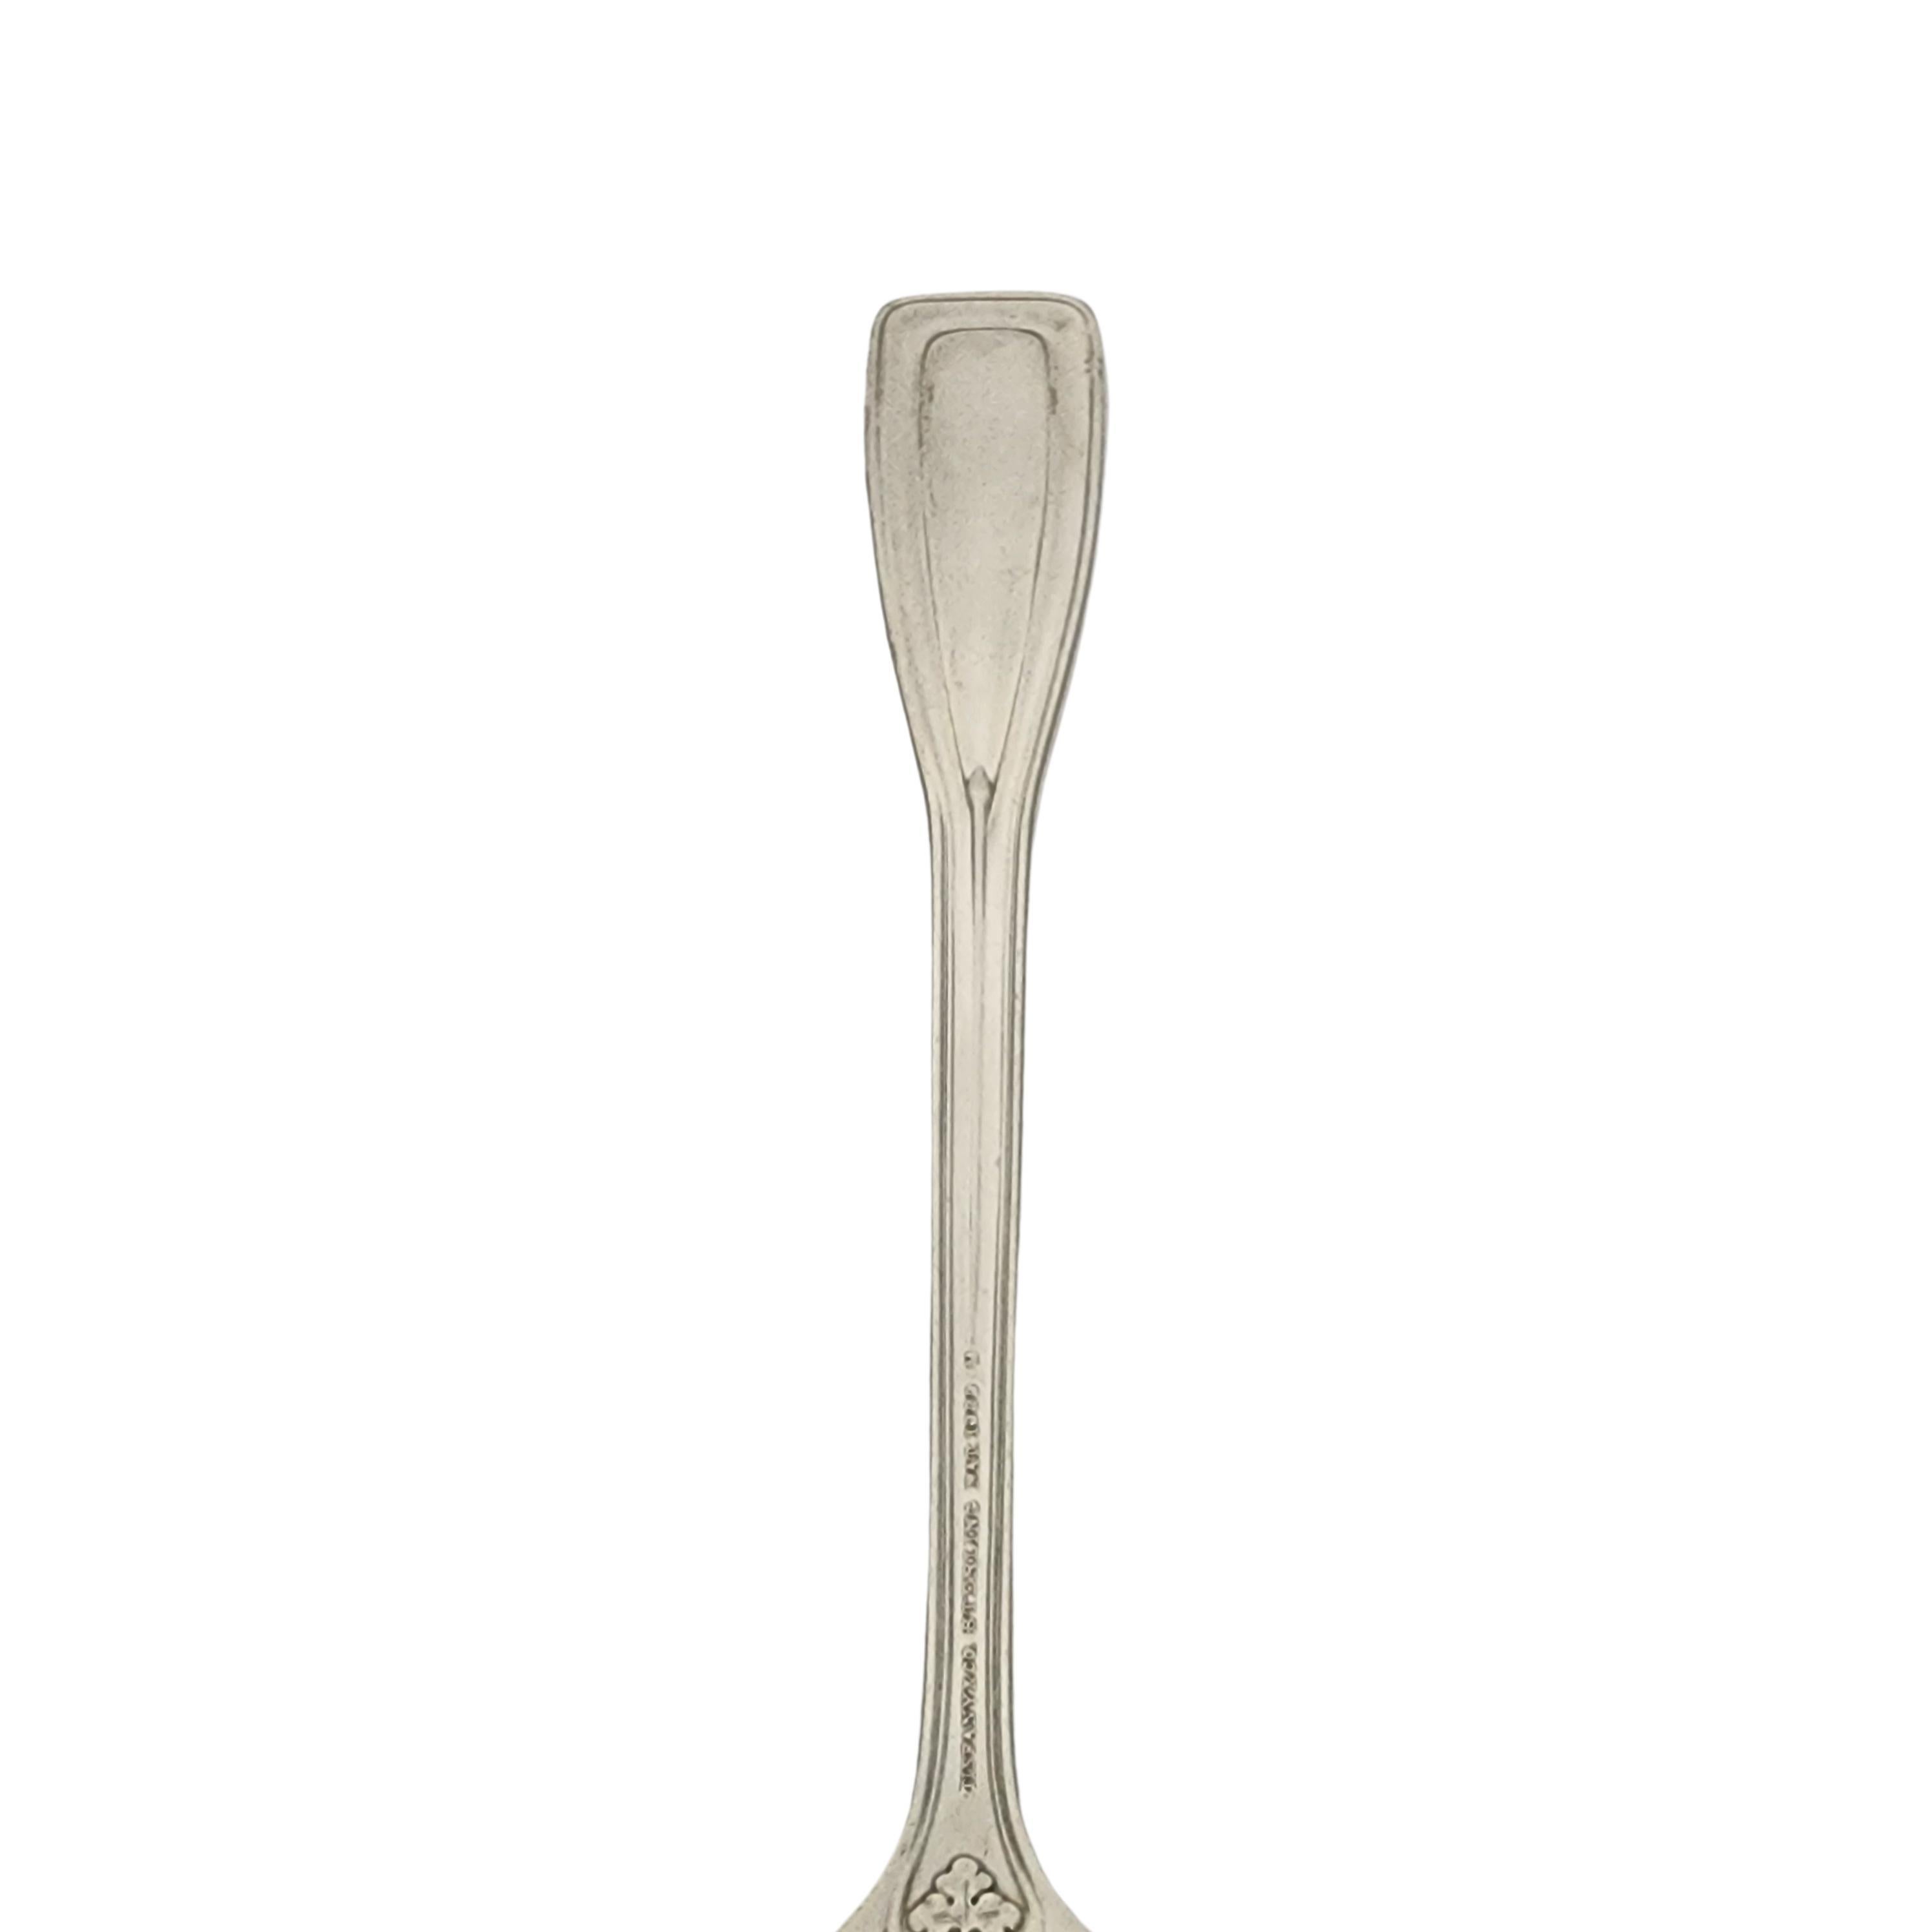 Tiffany & Co St Dunstan Sterling Silver Fork w/mono 7